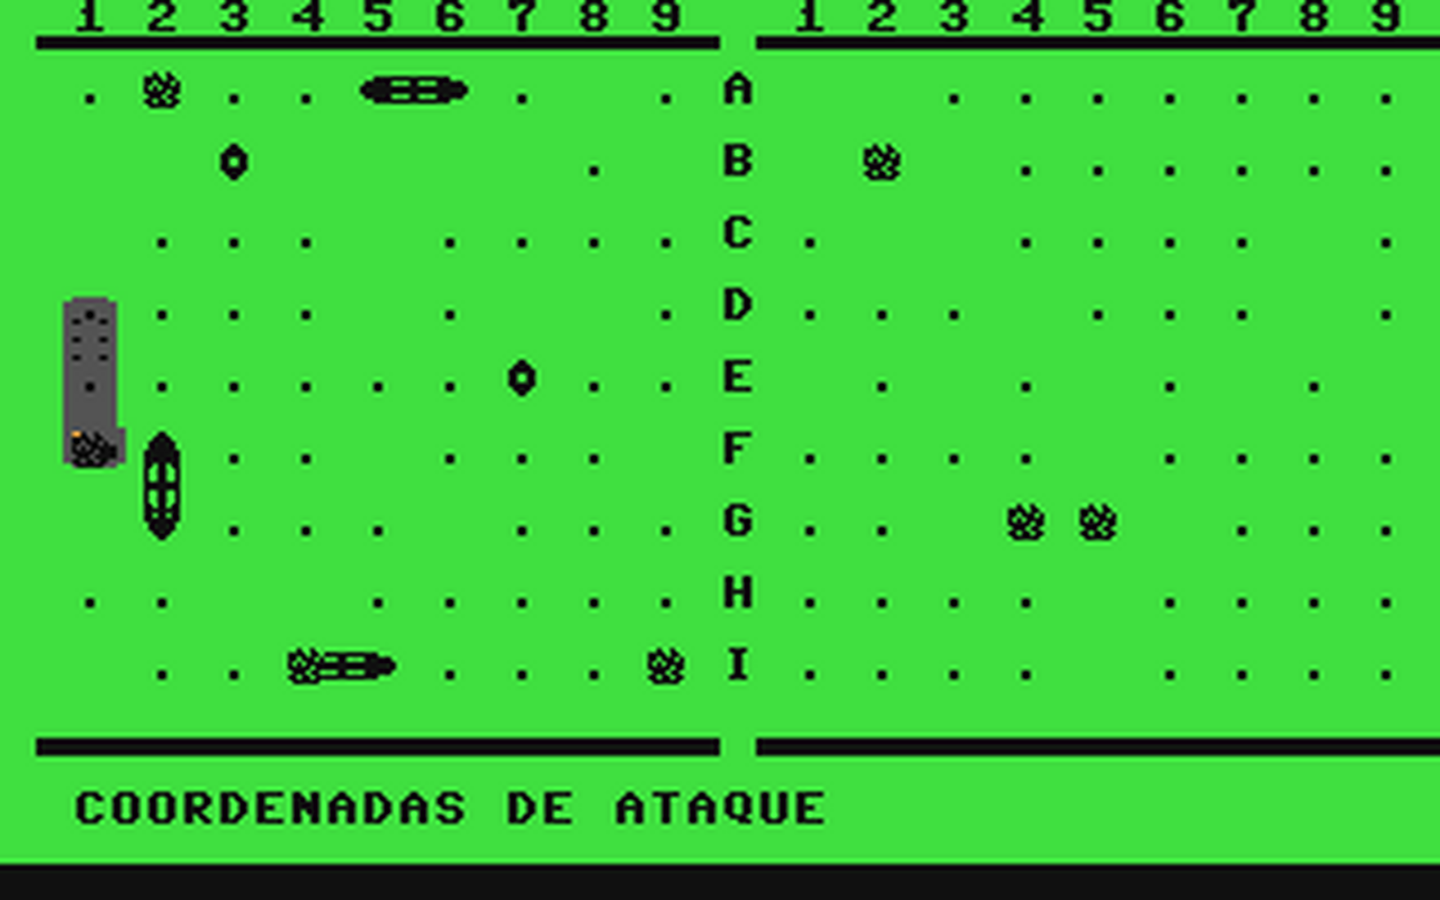 C64 GameBase Batalla_Naval Proedi_Editorial_S.A./Drean_Commodore 1988